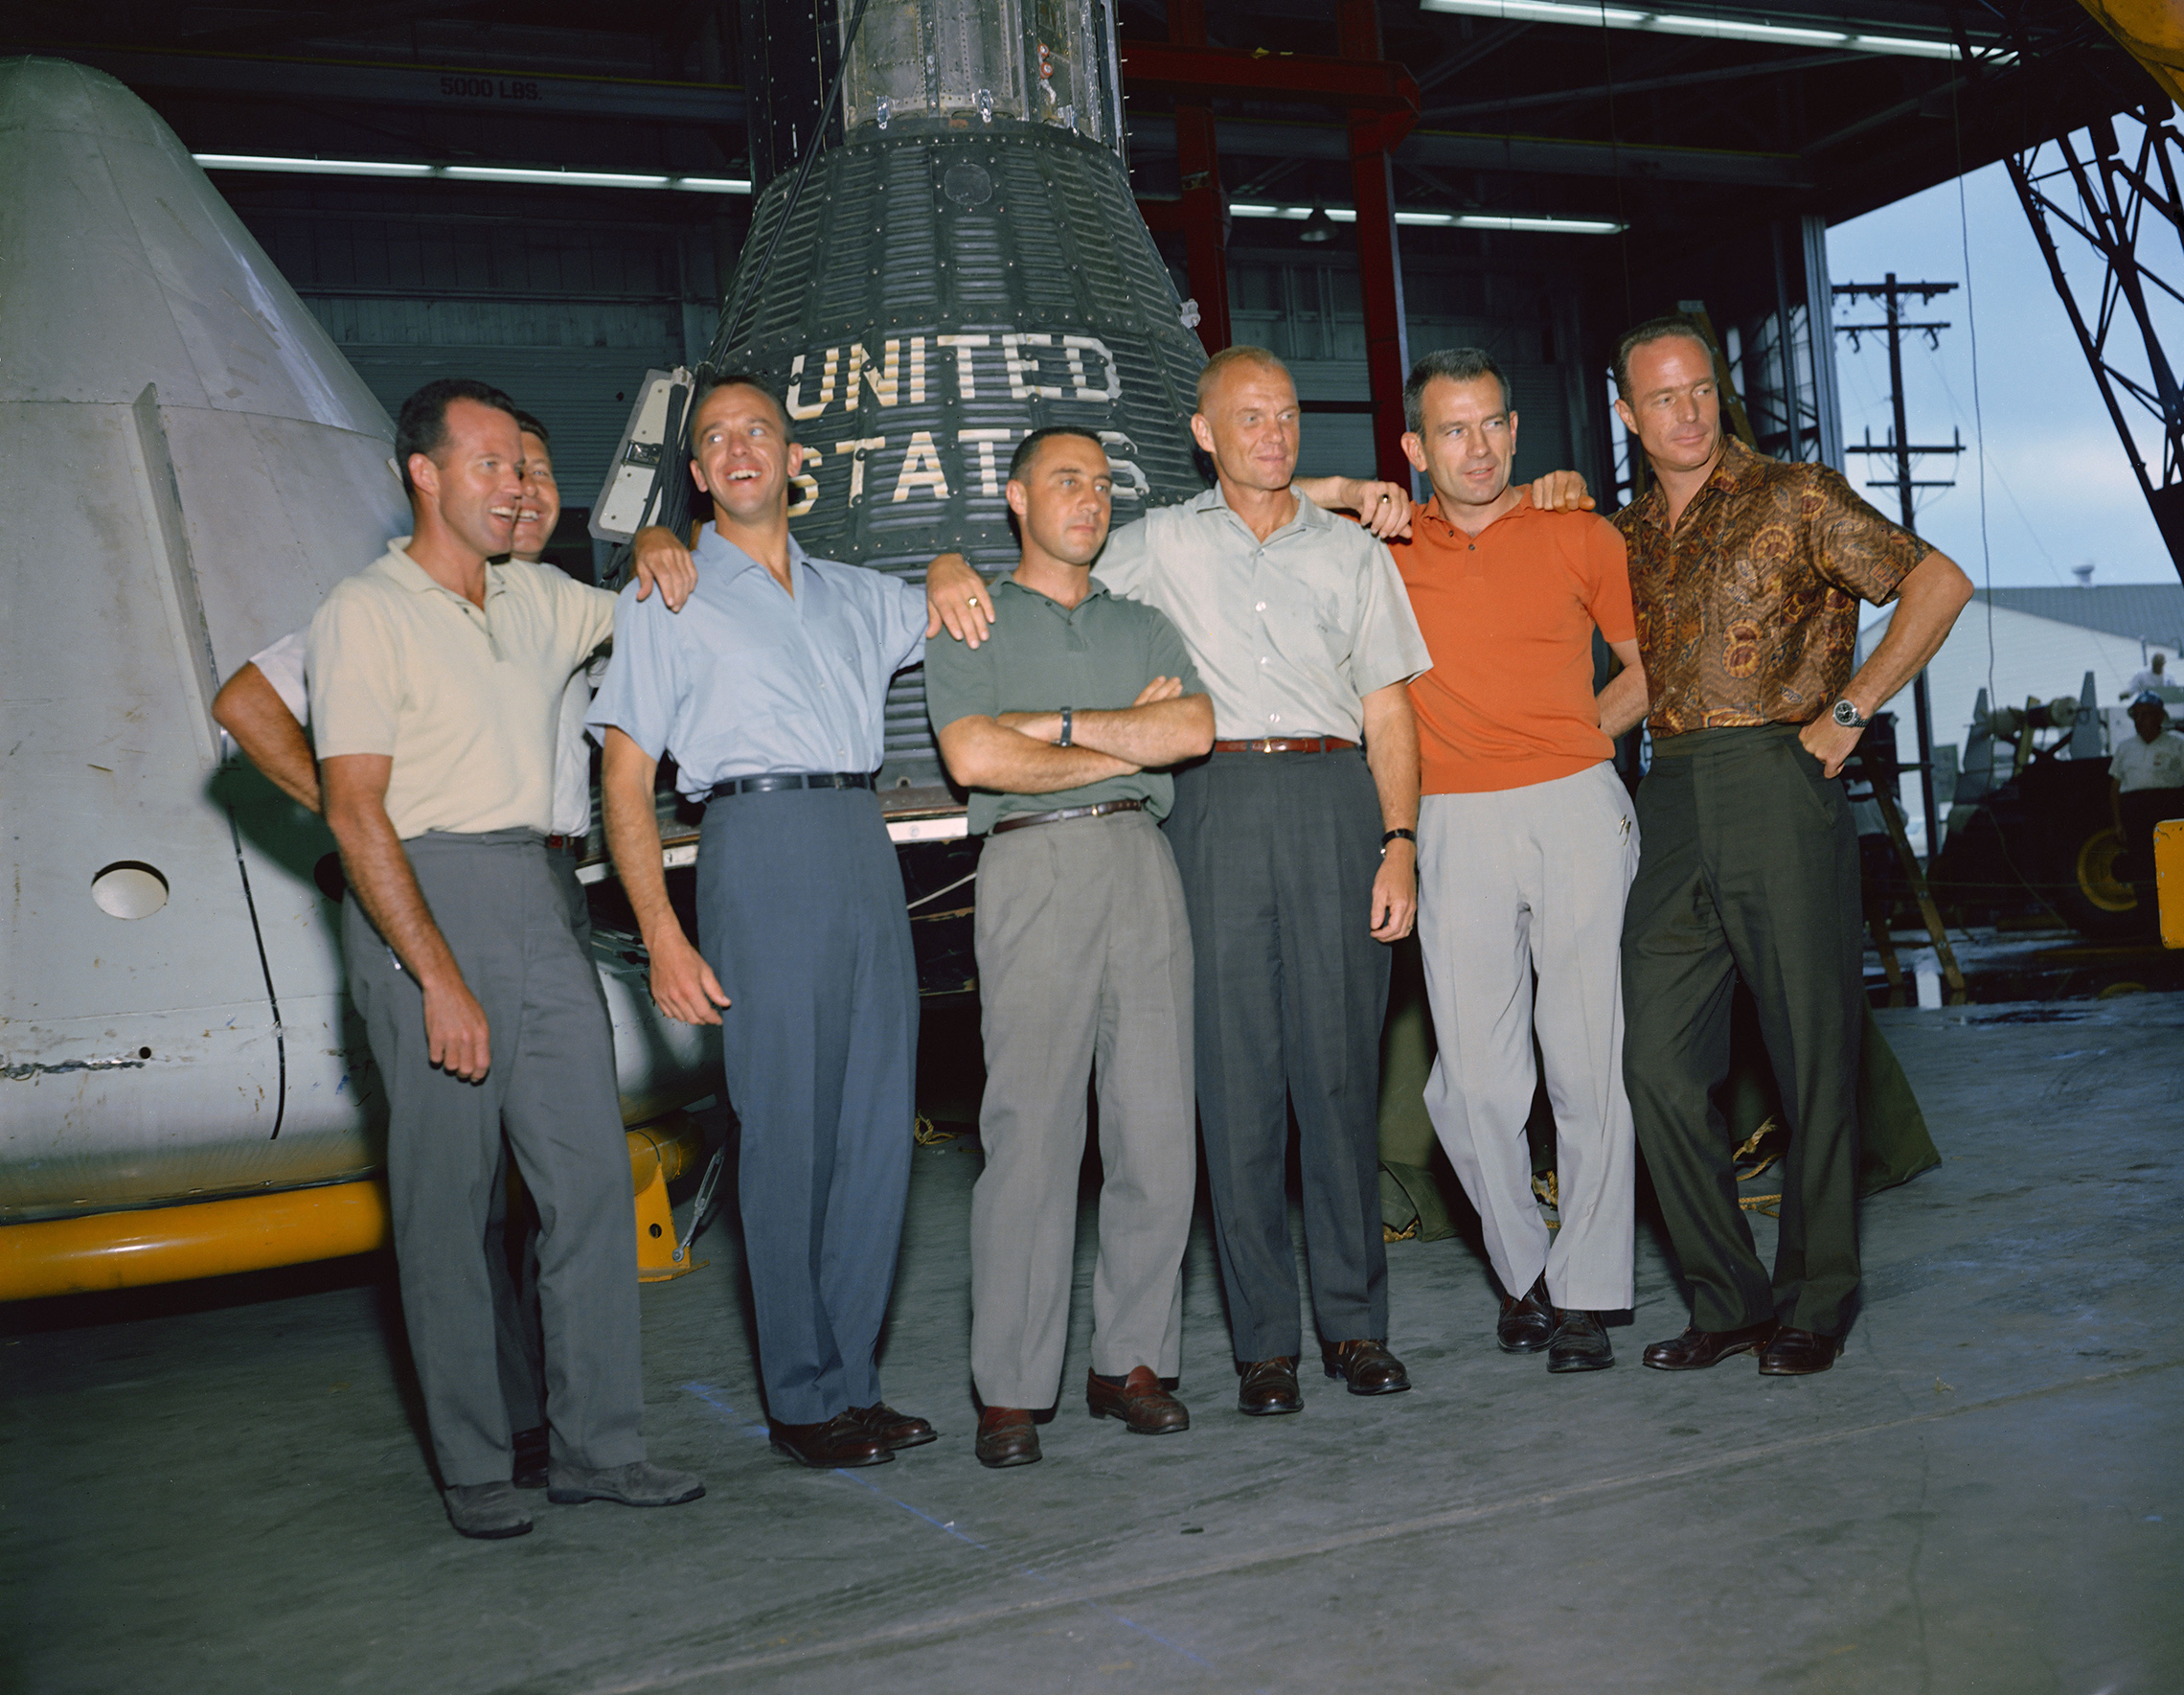 9月、1959年、NASAの最初の管理者、キース-グレナン博士は、ワシントンD.C.での記者会見で、代理店の最初の宇宙飛行士の名前を発表しました。パイロット、l.gordon cooper jr.、virgil i.(gus)grissom、およびdonald k.(deke)slayton; 海兵隊の飛行士ジョン・H・グレン・ジュニアと共に、1963年6月にテキサス州ヒューストンの有人宇宙船センター(MSC)、現在のジョンソン宇宙センターで撮影されたマーキュリー初の宇宙飛行士の集合写真である。 宇宙飛行士は、左から右にあります：クーパー、シララ、シェパード、グリソム、グレン、スレイトンとカーペンター。 マーキュリー計画は、NASAの最初の主要な事業となった。 このプログラムの目的は、人間が評価した宇宙船を地球の周りの軌道に配置し、そのような状態で宇宙飛行士の性能を観察し、宇宙飛行士と宇宙船を安 マーキュリーの飛行は、人間が宇宙で生きて働くことができることを証明し、ジェミニとアポロのプログラムのためだけでなく、すべてのさらなる人間の宇宙飛行のための道を開いた。 (NASA)'s first administrator, Dr. Keith Glennan, announced the names of the agency's first group of astronauts at a news conference in Washington, D.C. Now known as the "Original Seven," they included three Naval aviators, M. Scott Carpenter, Walter M. Schirra Jr., and Alan B. Shepard Jr.; three Air Force pilots, L. Gordon Cooper Jr., Virgil I. (Gus) Grissom, and Donald K. (Deke) Slayton; along with Marine Corps aviator John H. Glenn Jr. This group photo of the original Mercury astronauts was taken in June 1963 at the Manned Spacecraft Center (MSC), now Johnson Space Center, in Houston, Texas. The astronauts are, left to right: Cooper, Schirra, Shepard, Grissom, Glenn, Slayton and Carpenter. Project Mercury became NASA's first major undertaking. The objectives of the program were to place a human-rated spacecraft into orbit around Earth, observe the astronauts' performance in such conditions and safely recover the astronaut and the spacecraft. The Mercury flights proved that humans could live and work in space, and paved the way for the Gemini and Apollo programs as well as for all further human spaceflight. (NASA)